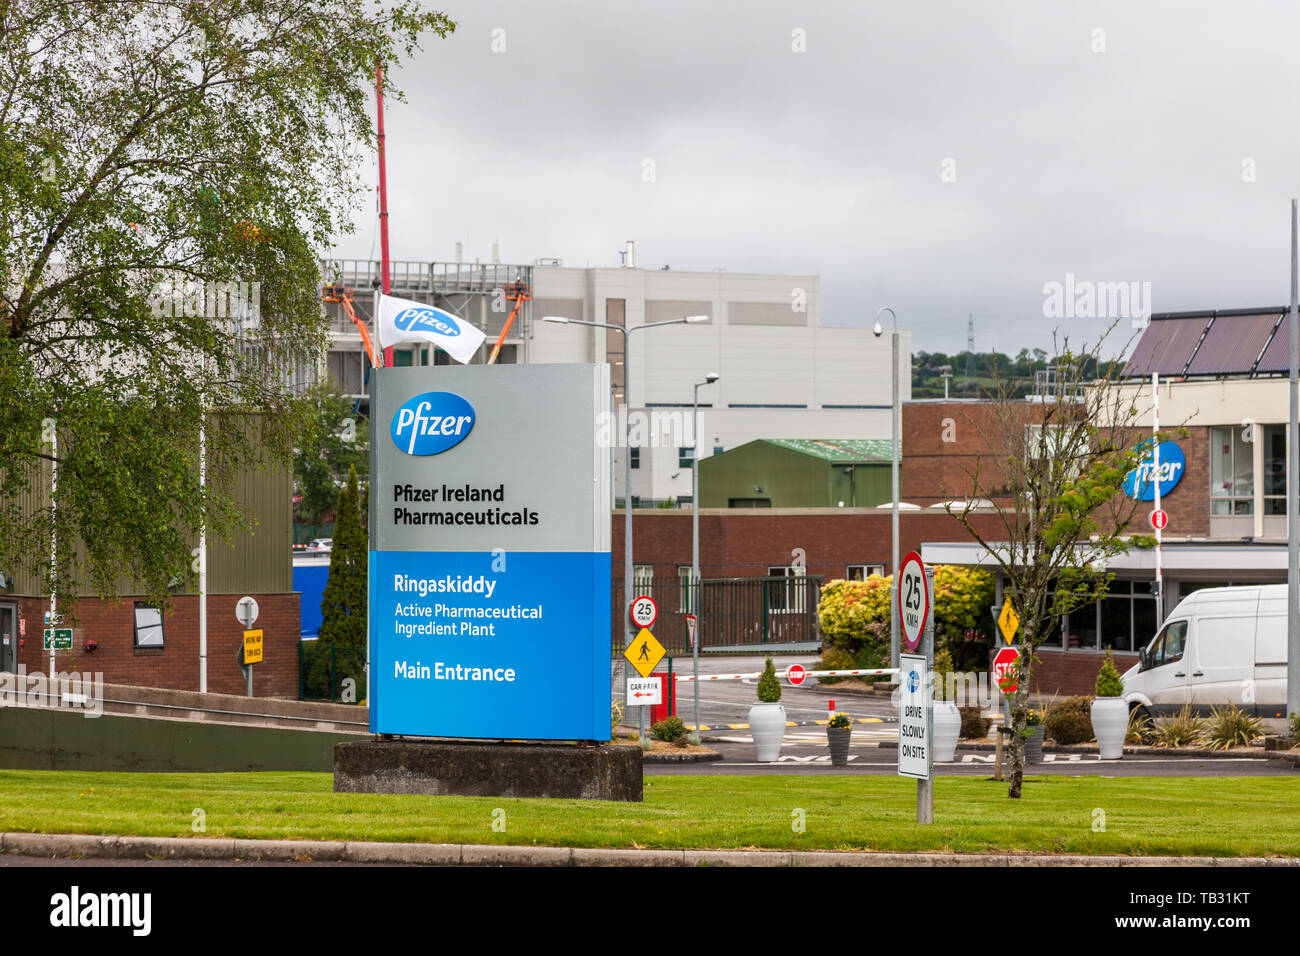 Ringaskiddy, Cork, Irlanda. 29 Maggio, 2019. Pfizer Pharmaceuticals sono questo mese segnando il loro cinquantesimo anniversario in Irlanda. L'occupazione è cresciuta da Foto Stock